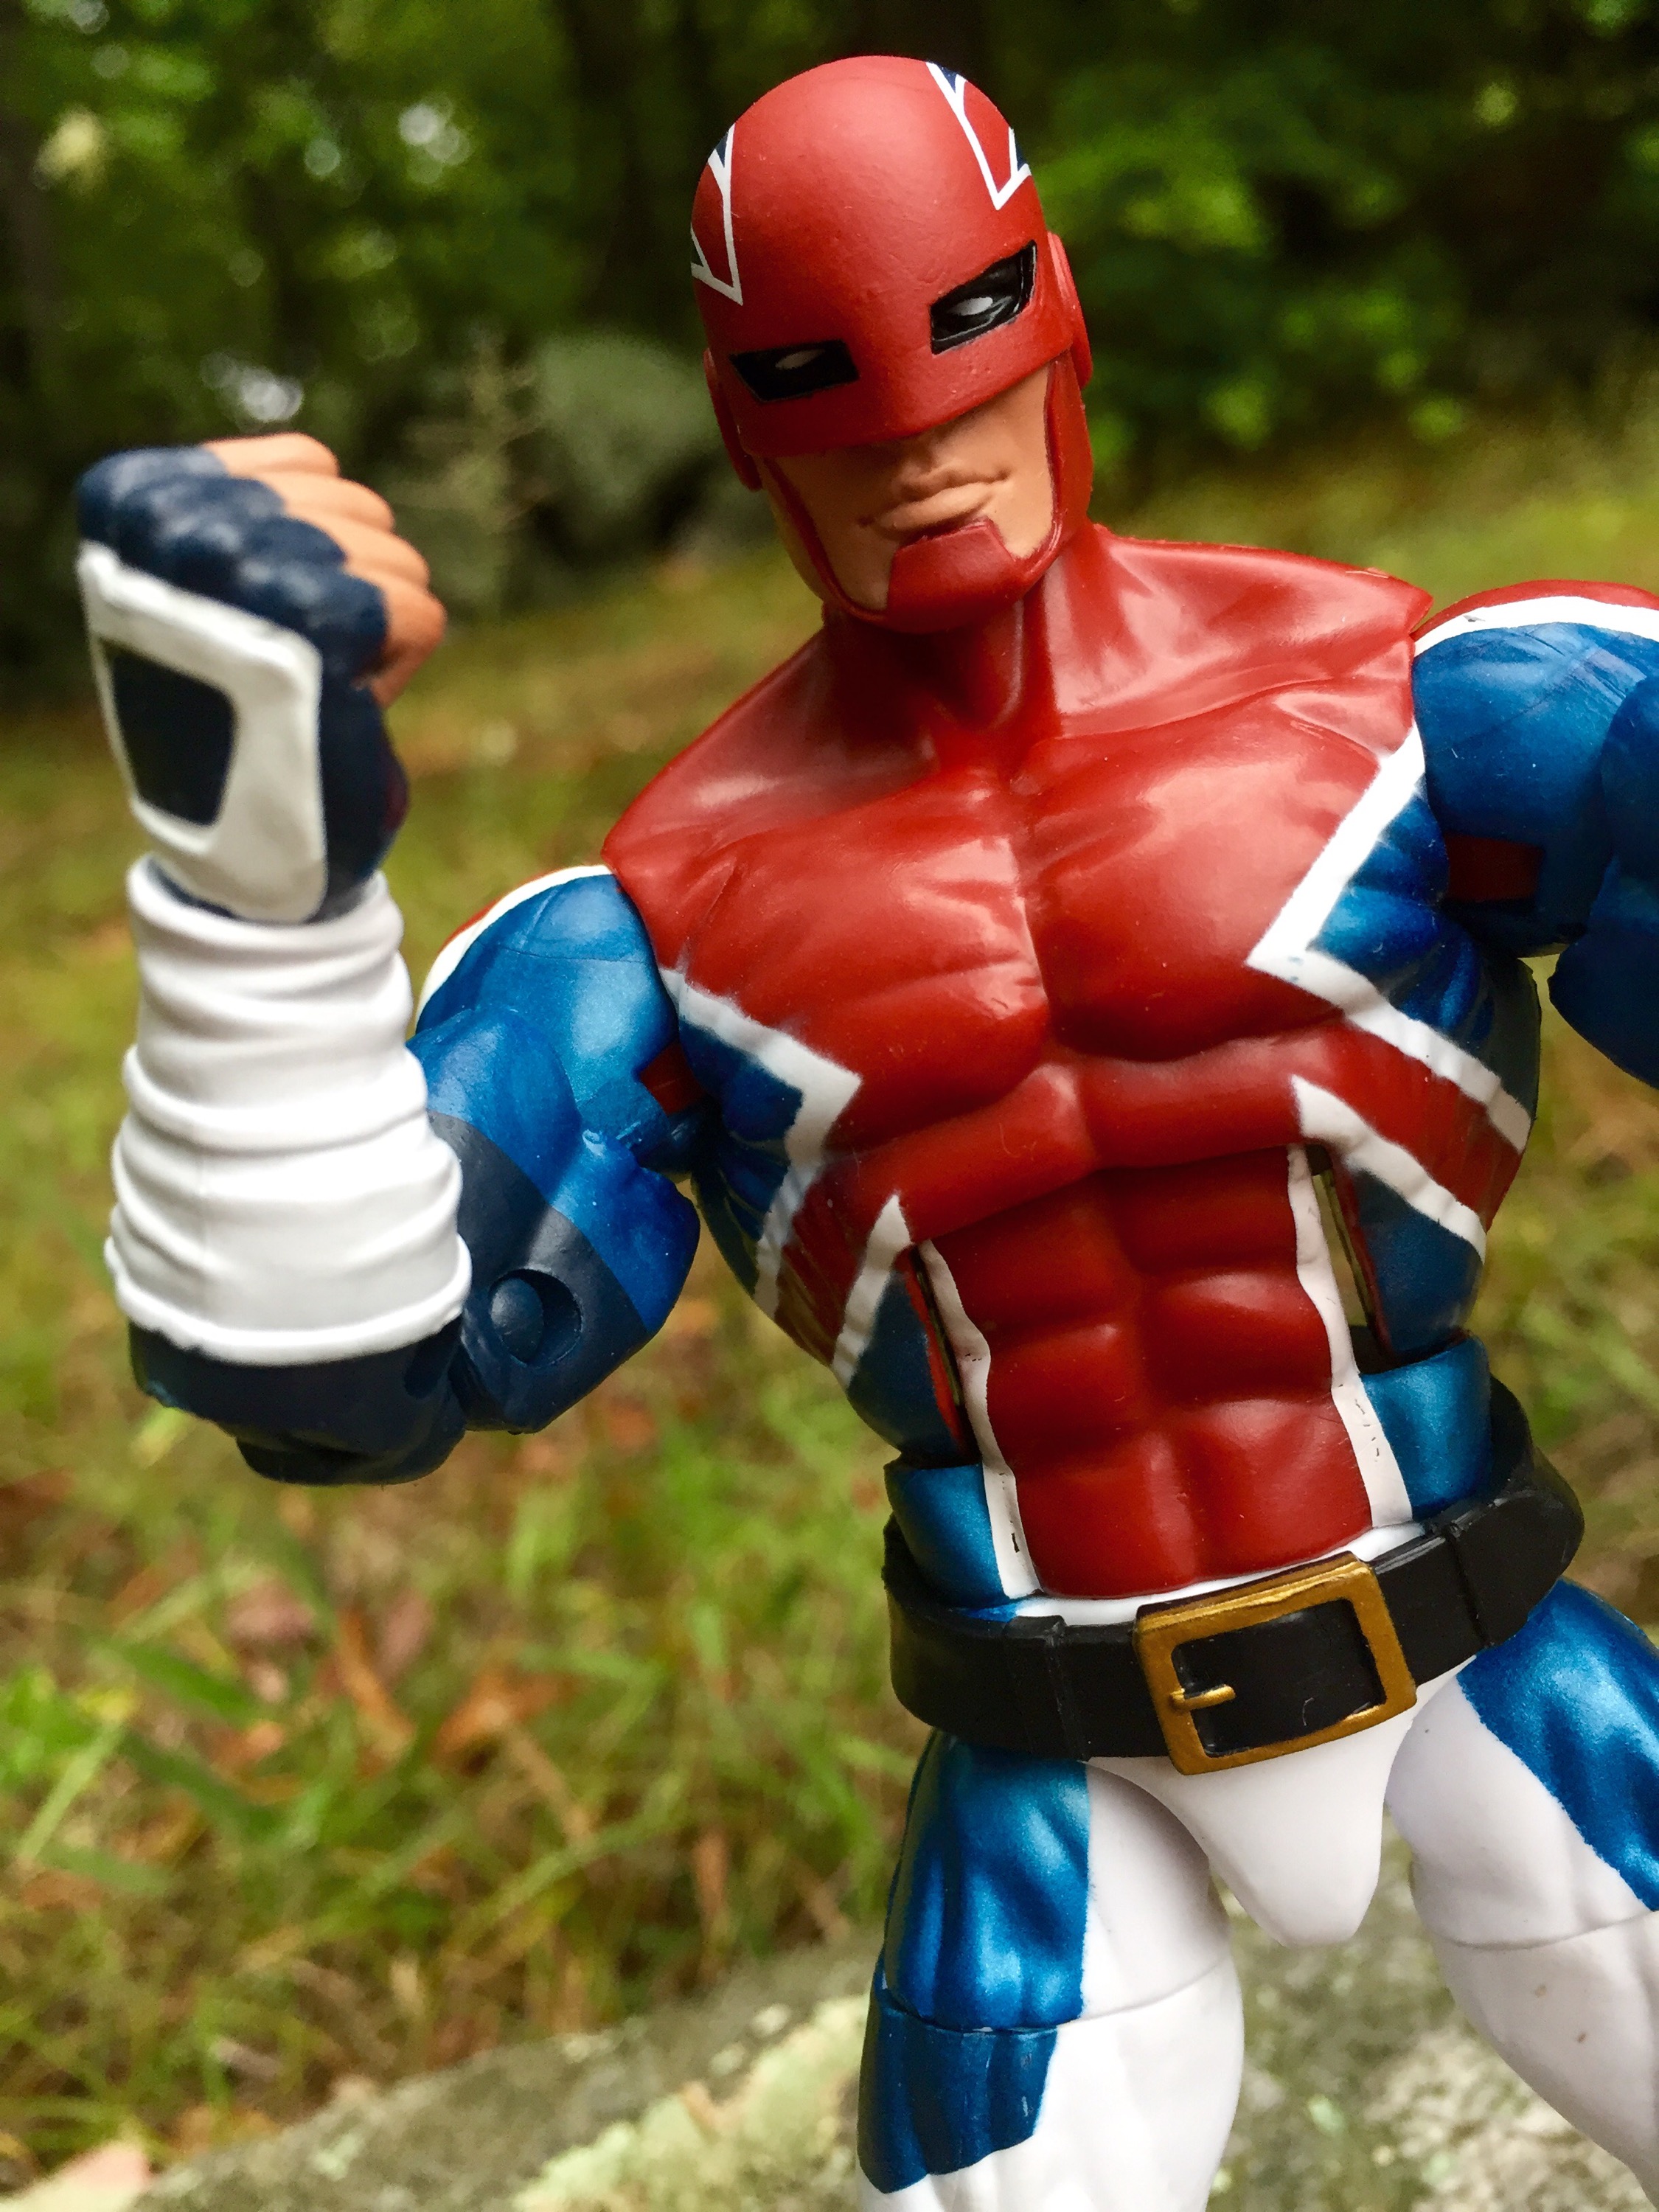 Marvel Legends Captain Britain Review & Photos 2016